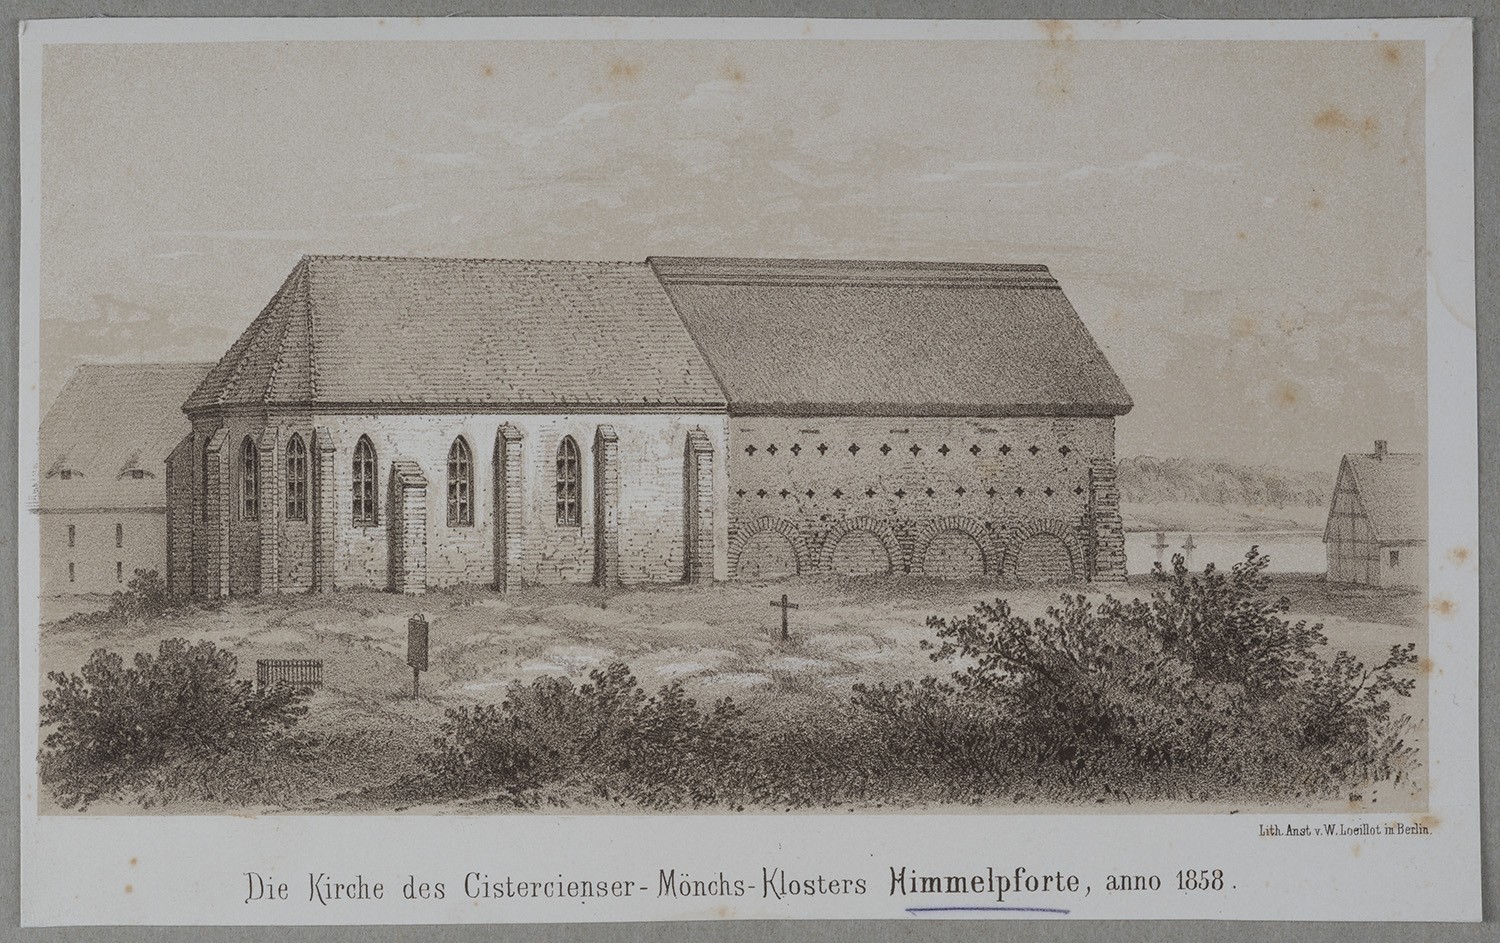 Himmelpfort (Kr. Templin)]: Klosterkirche von Norden (Landesgeschichtliche Vereinigung für die Mark Brandenburg e.V., Archiv CC BY)